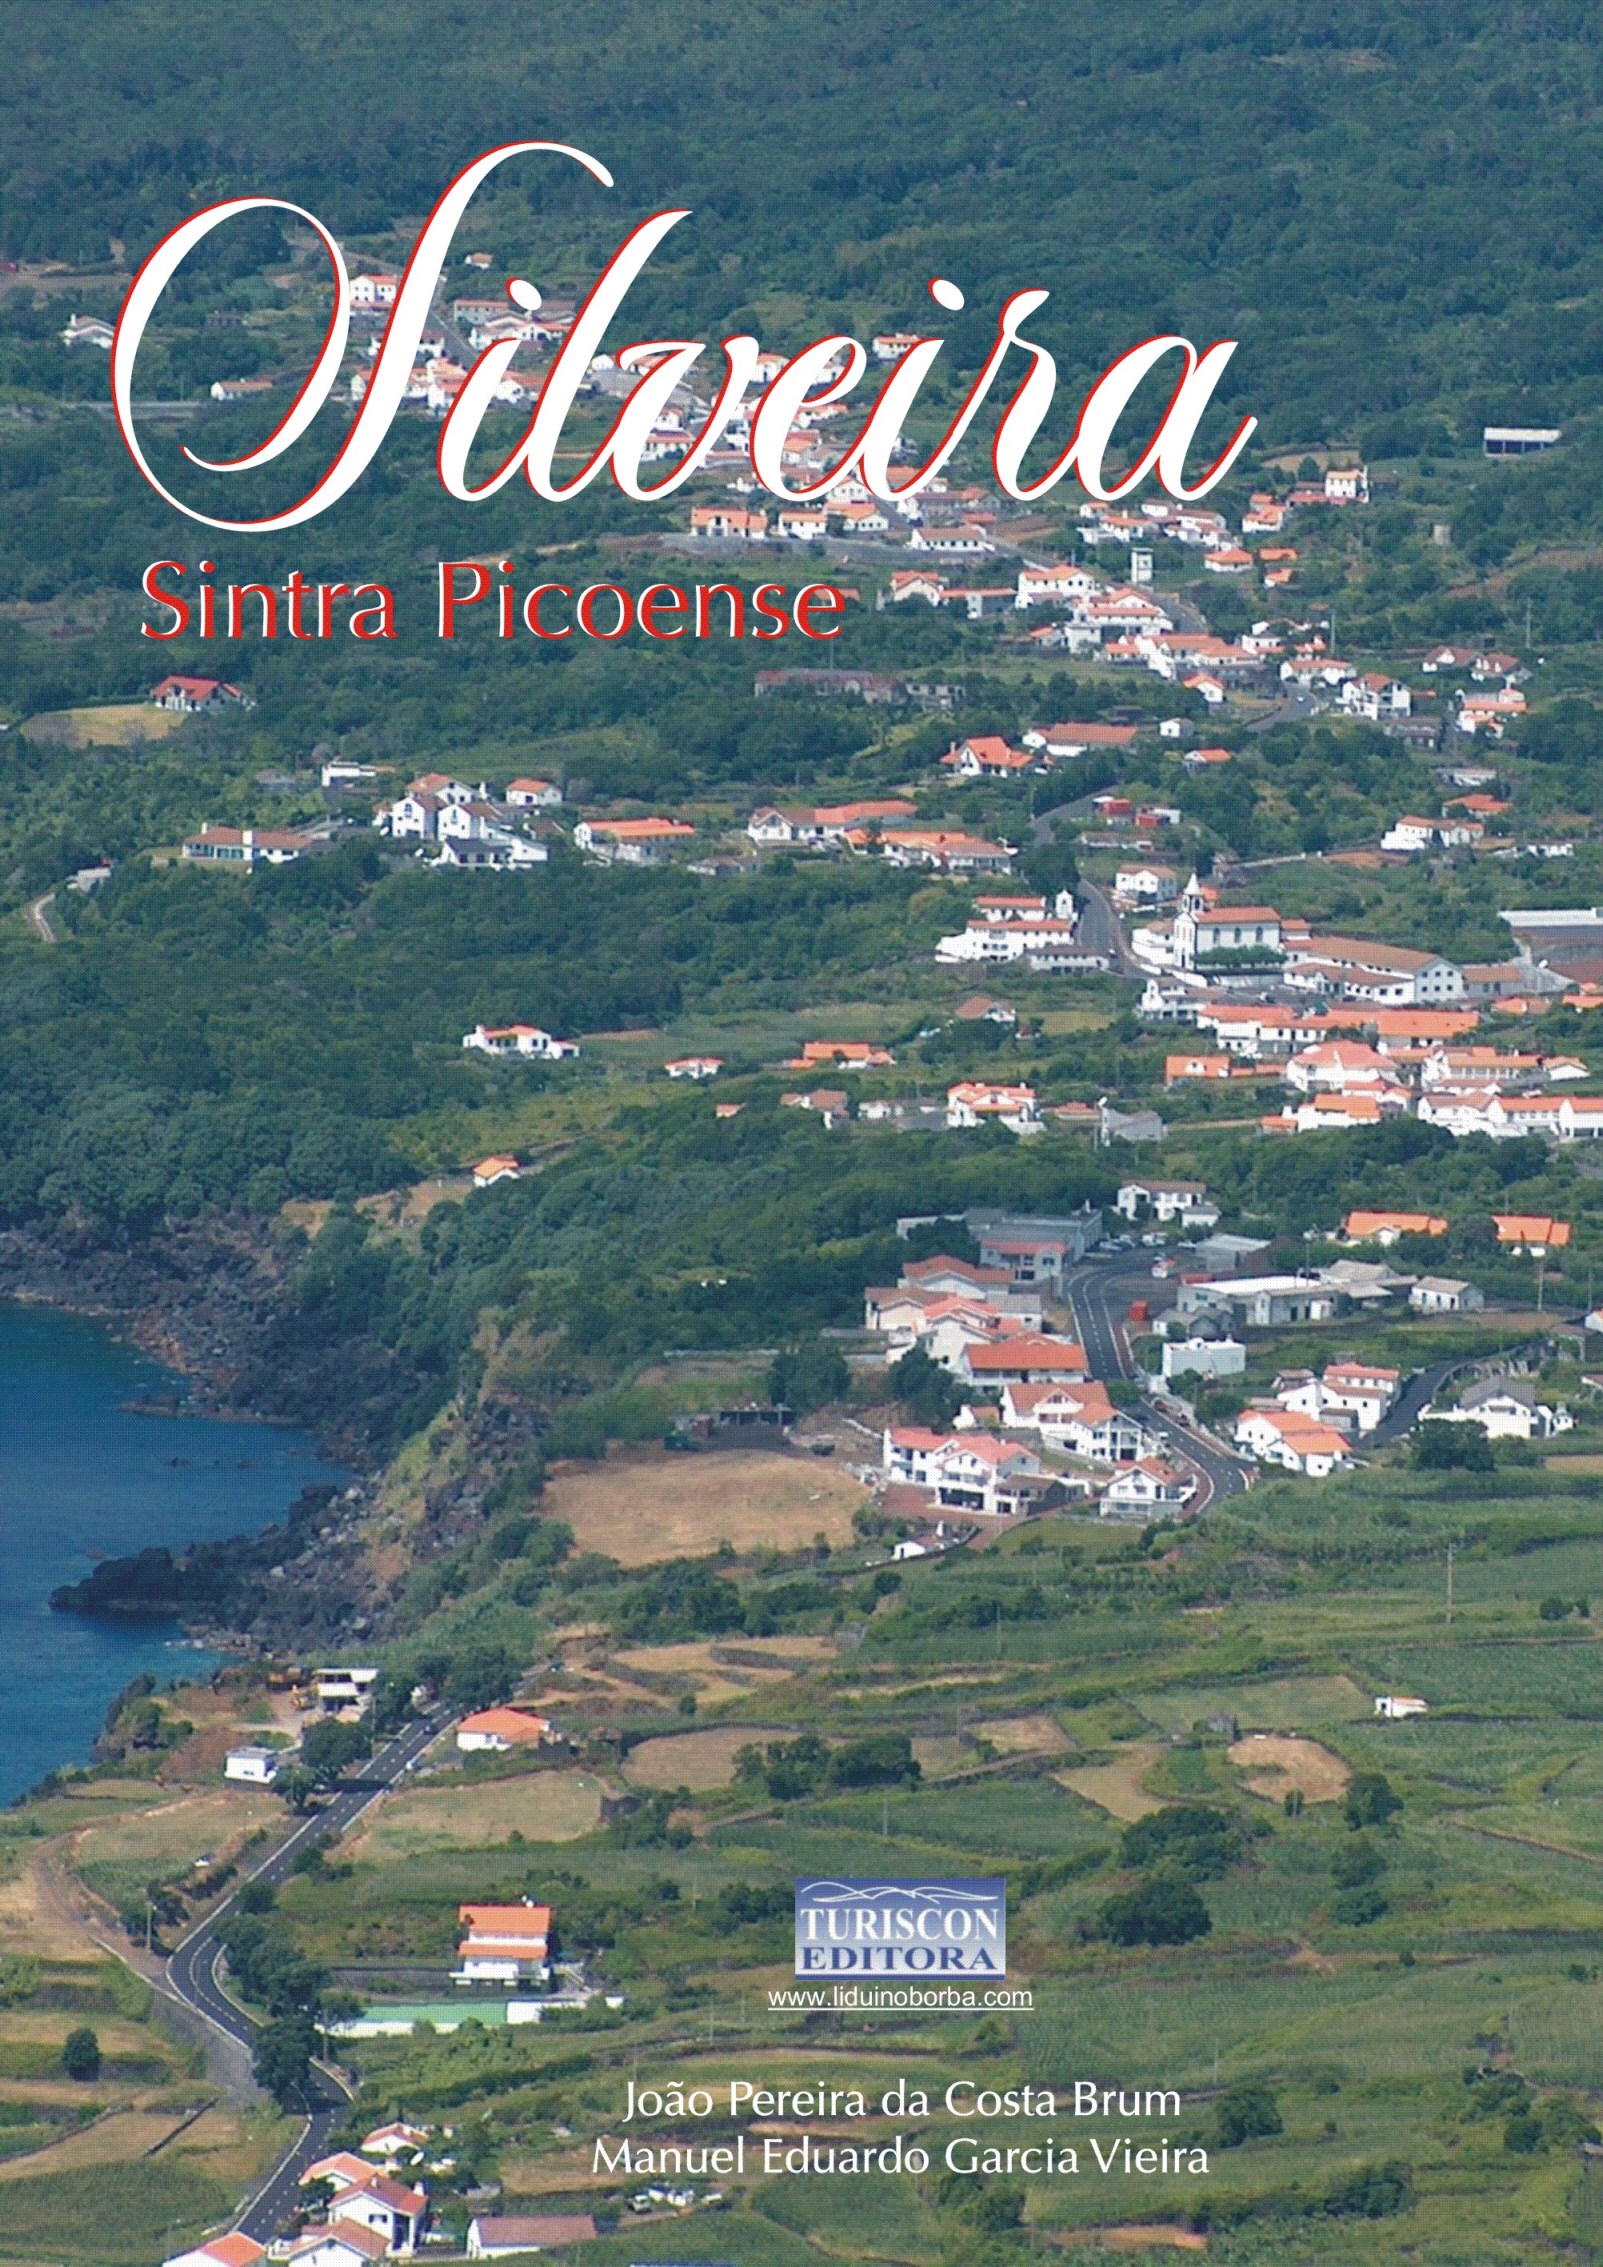 015 3003 Silveira – Sintra Picoense, 2012